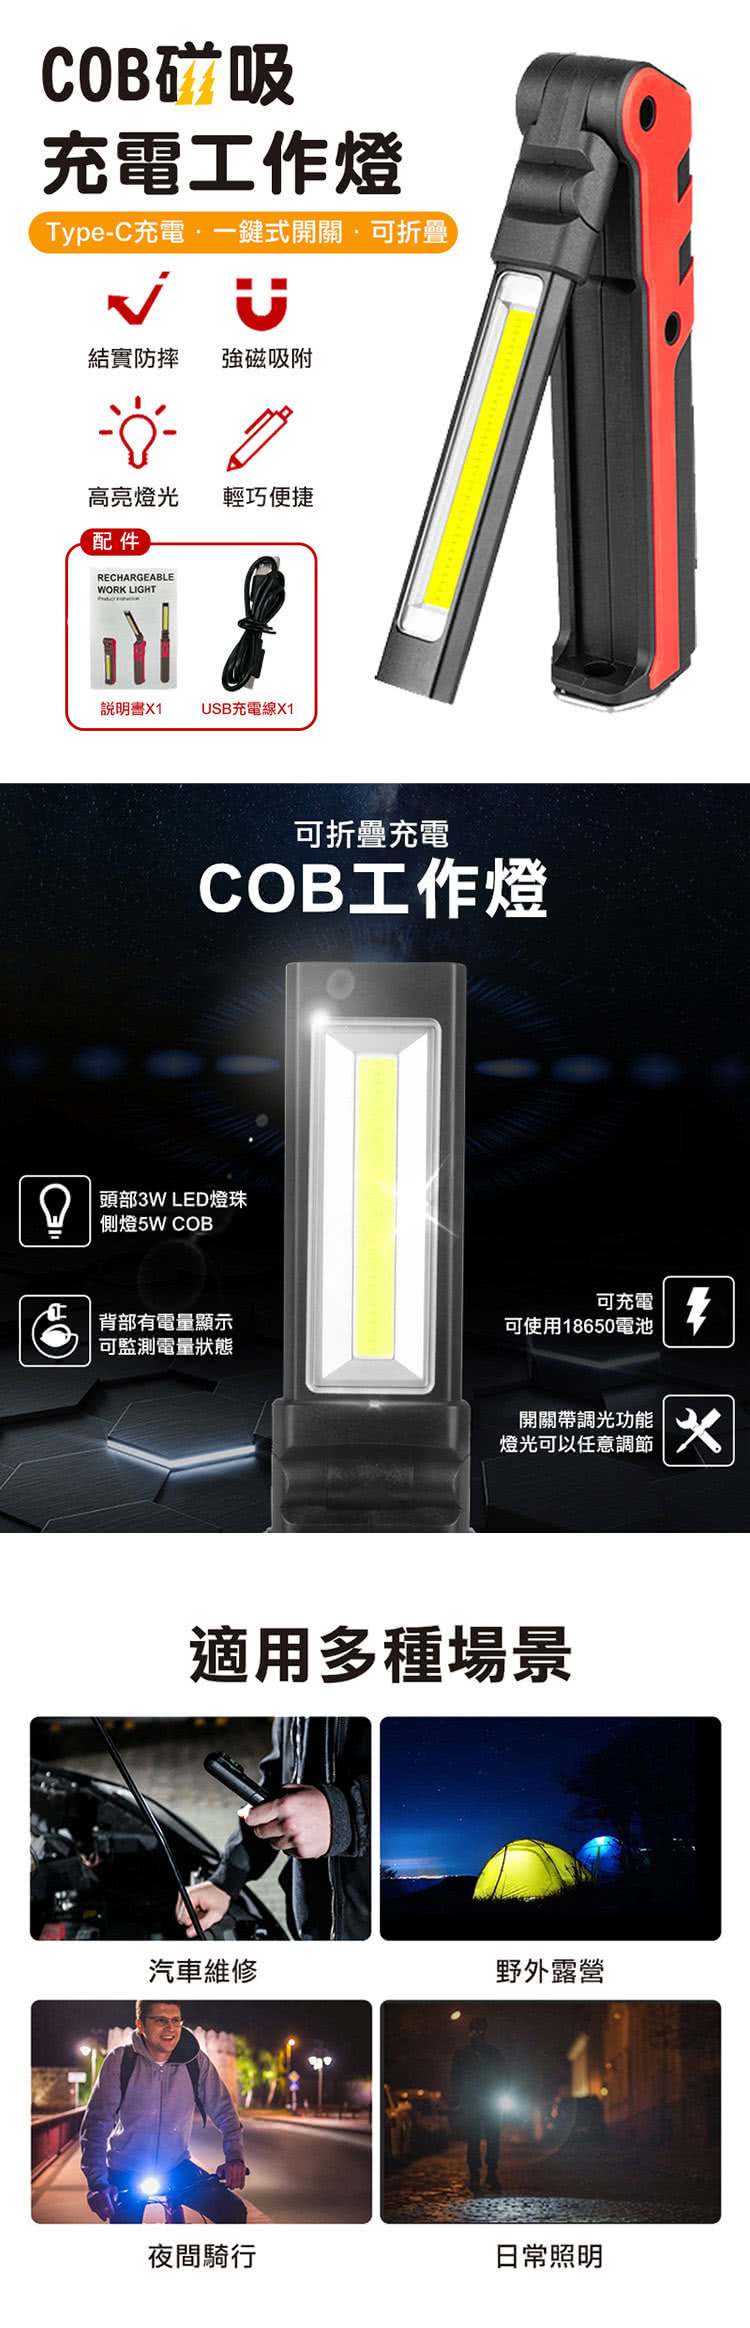 大船回港 COB磁吸充電工作燈(手電筒/折疊手電筒/USB充